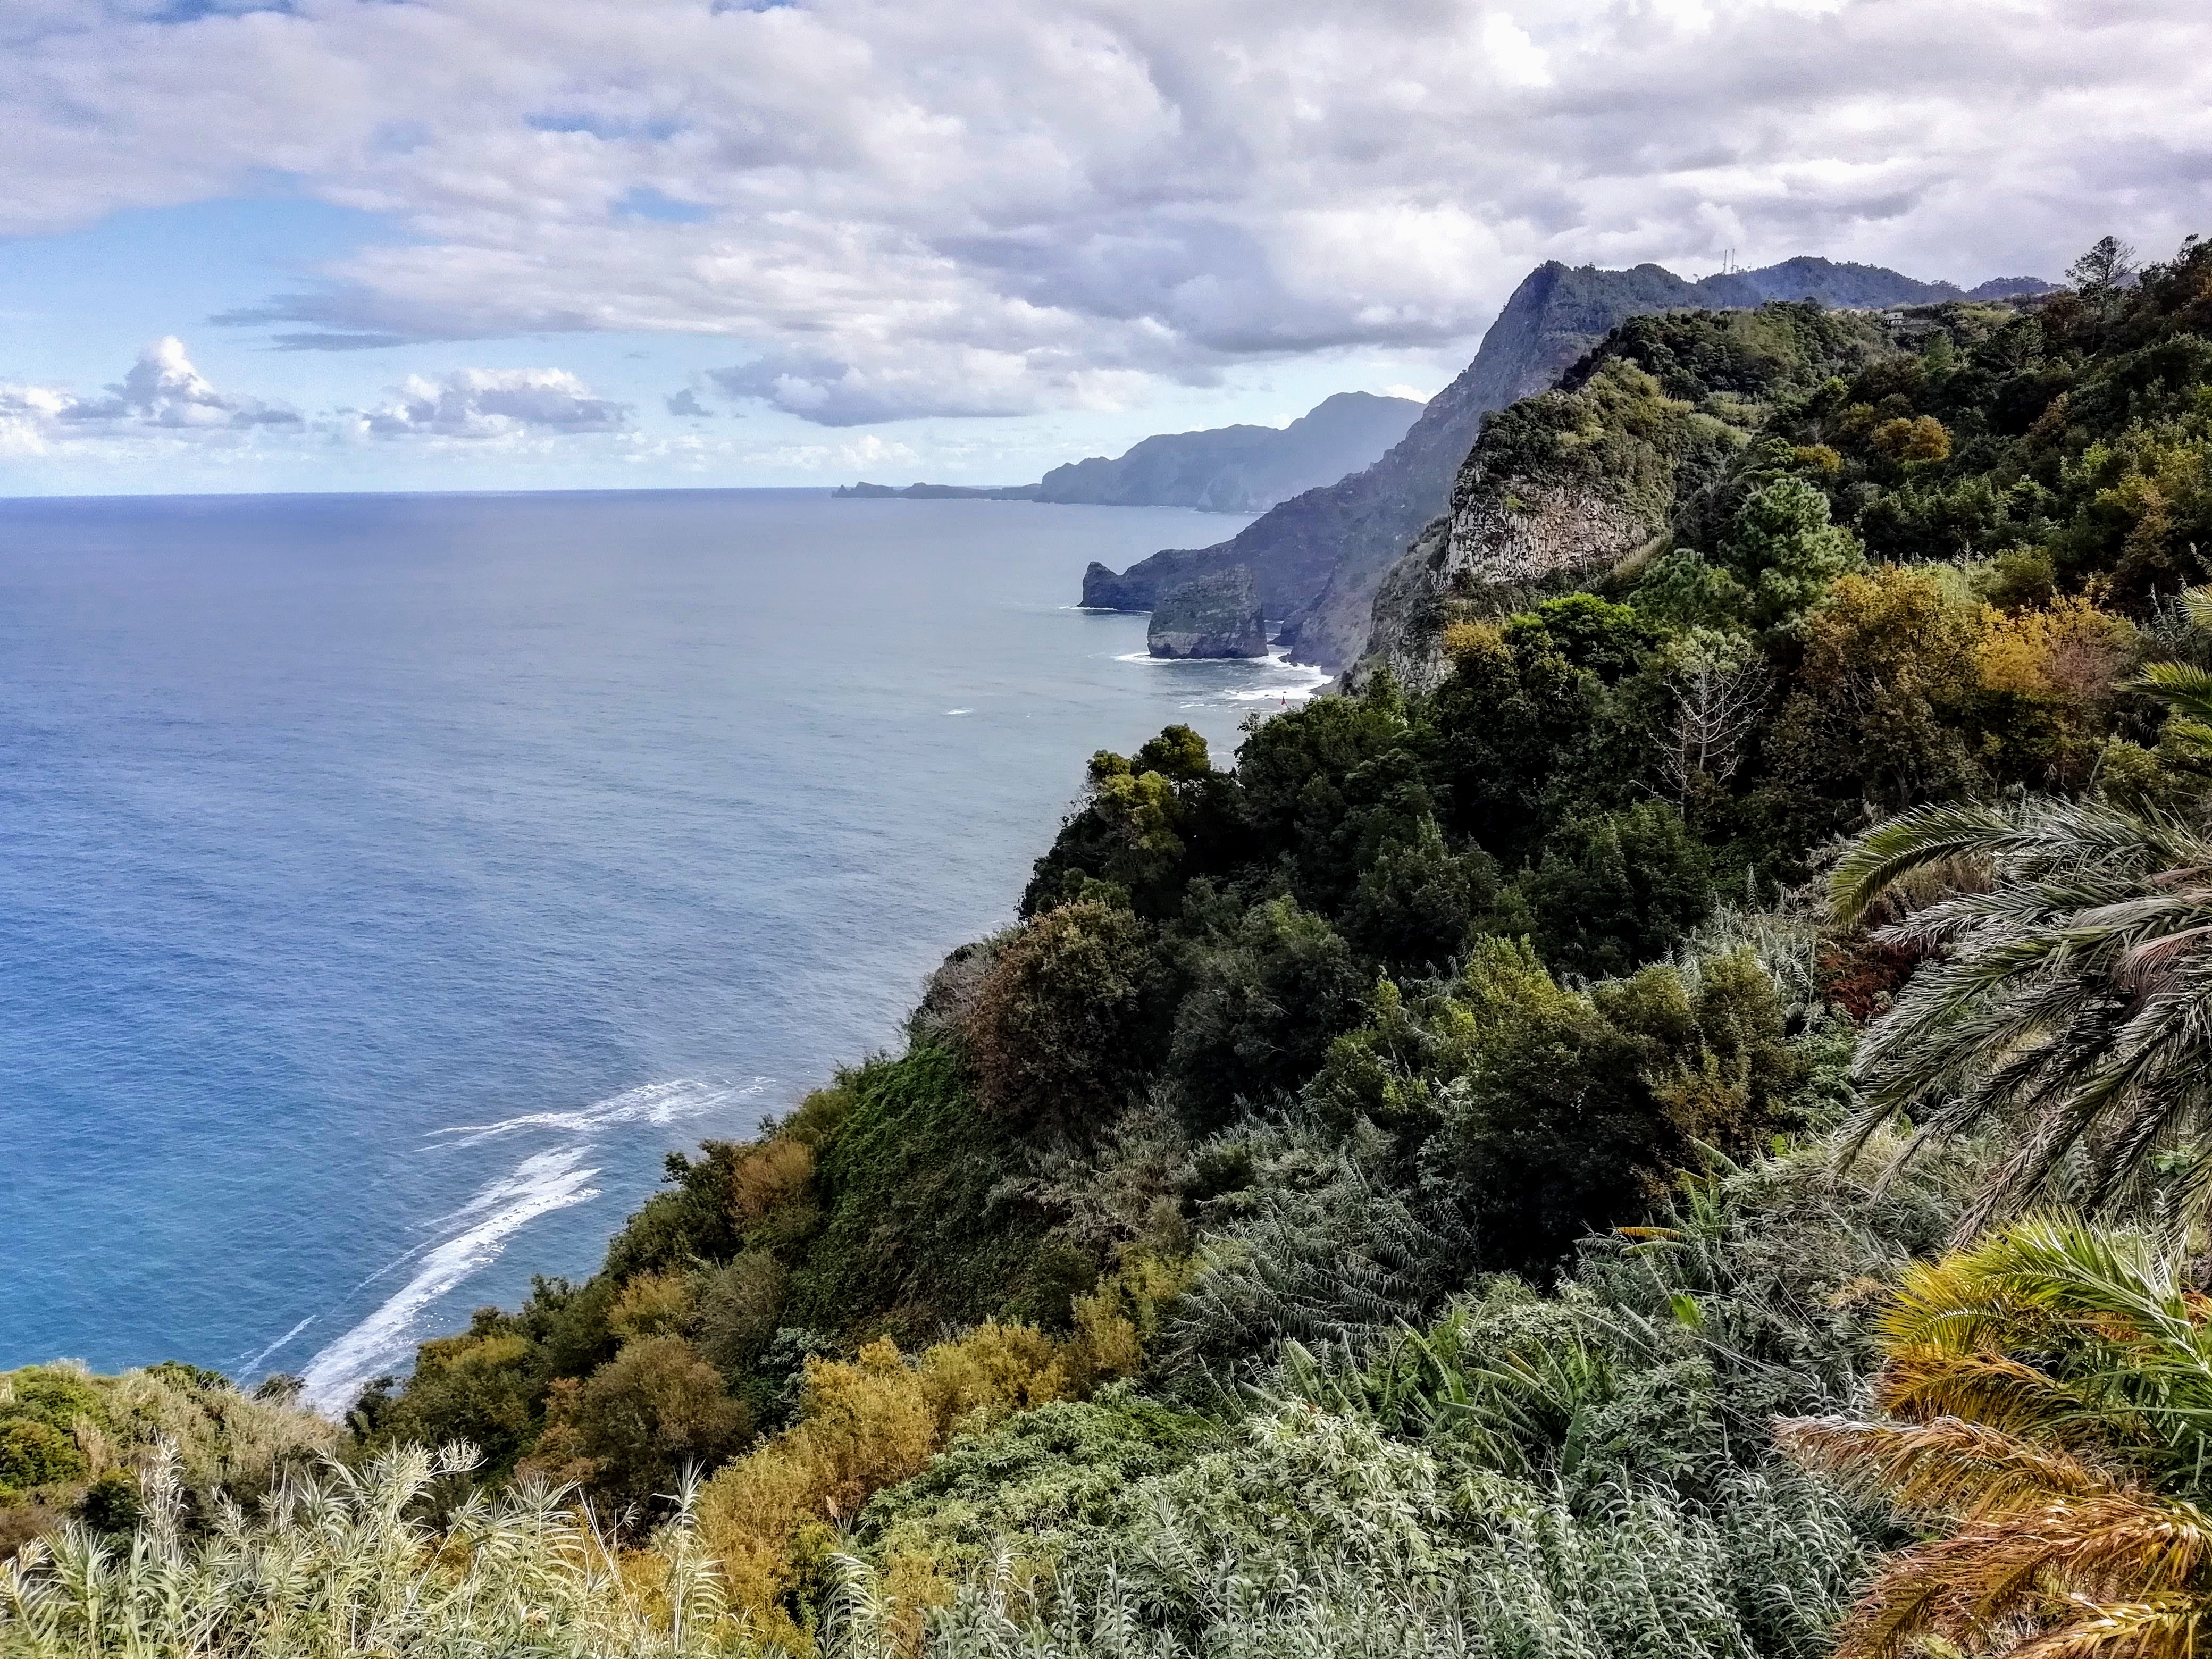 Along the coast from Santana, Madeira